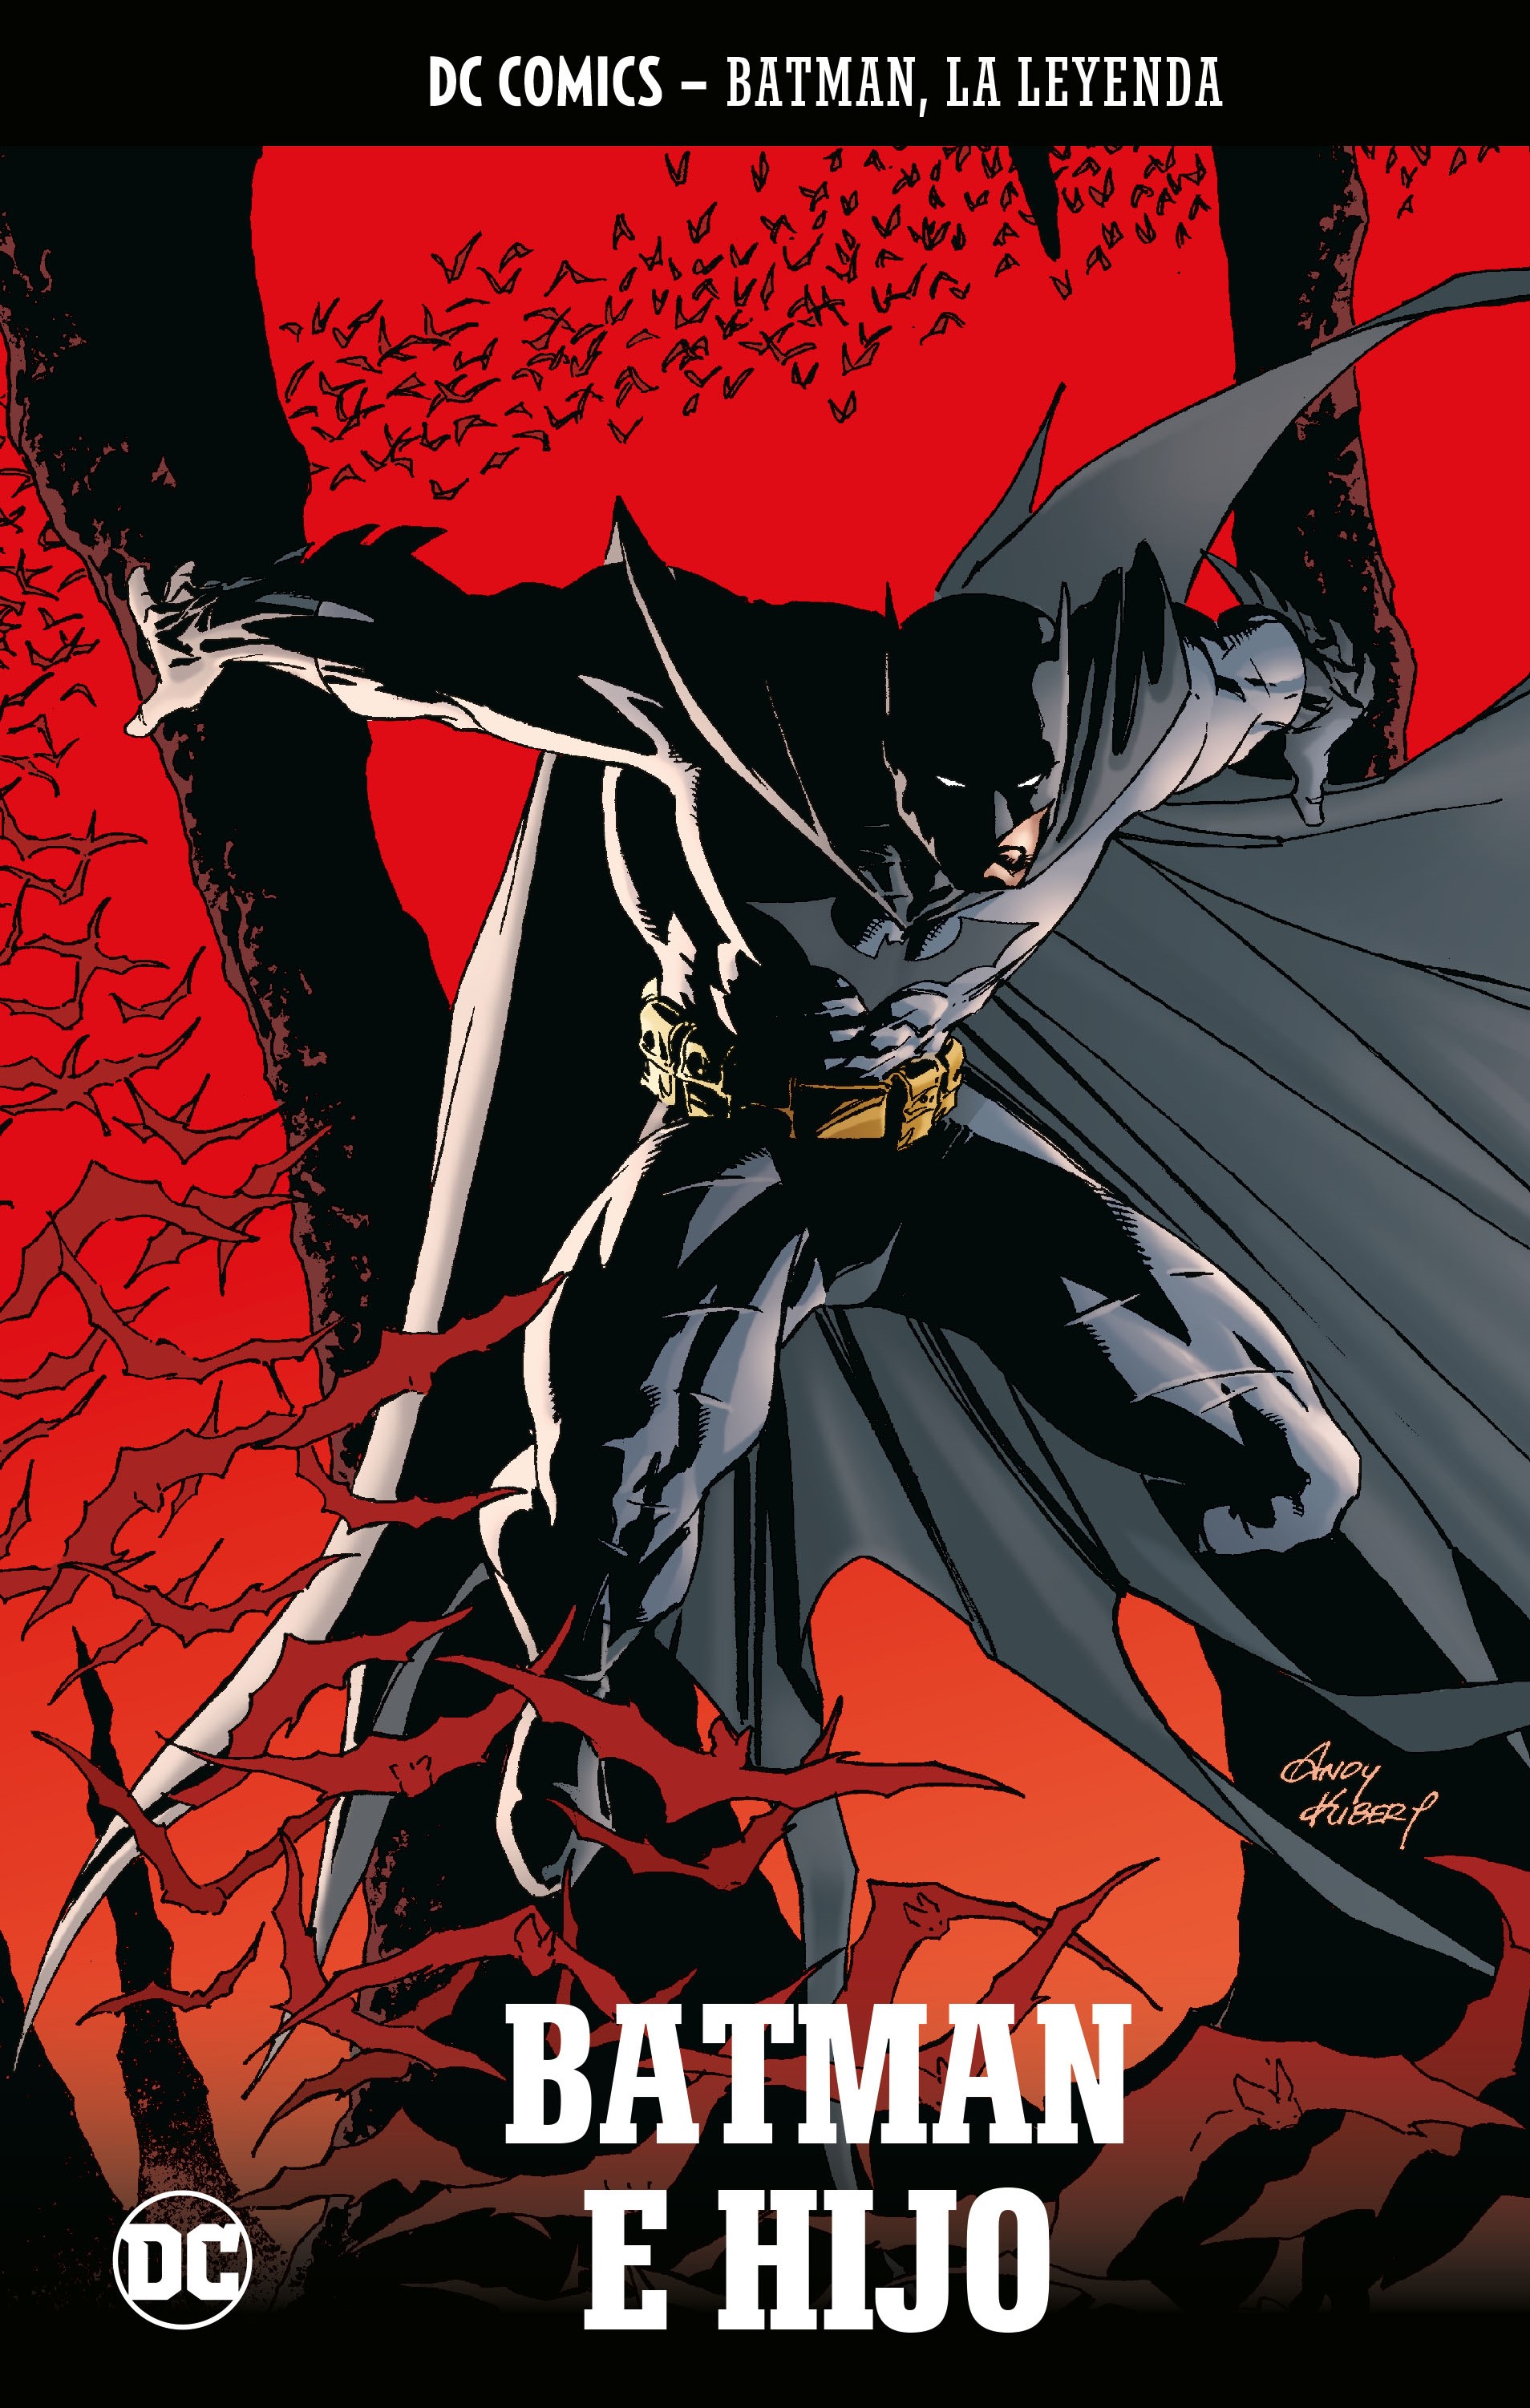 Batman, La Leyenda #79: Batman e hijo